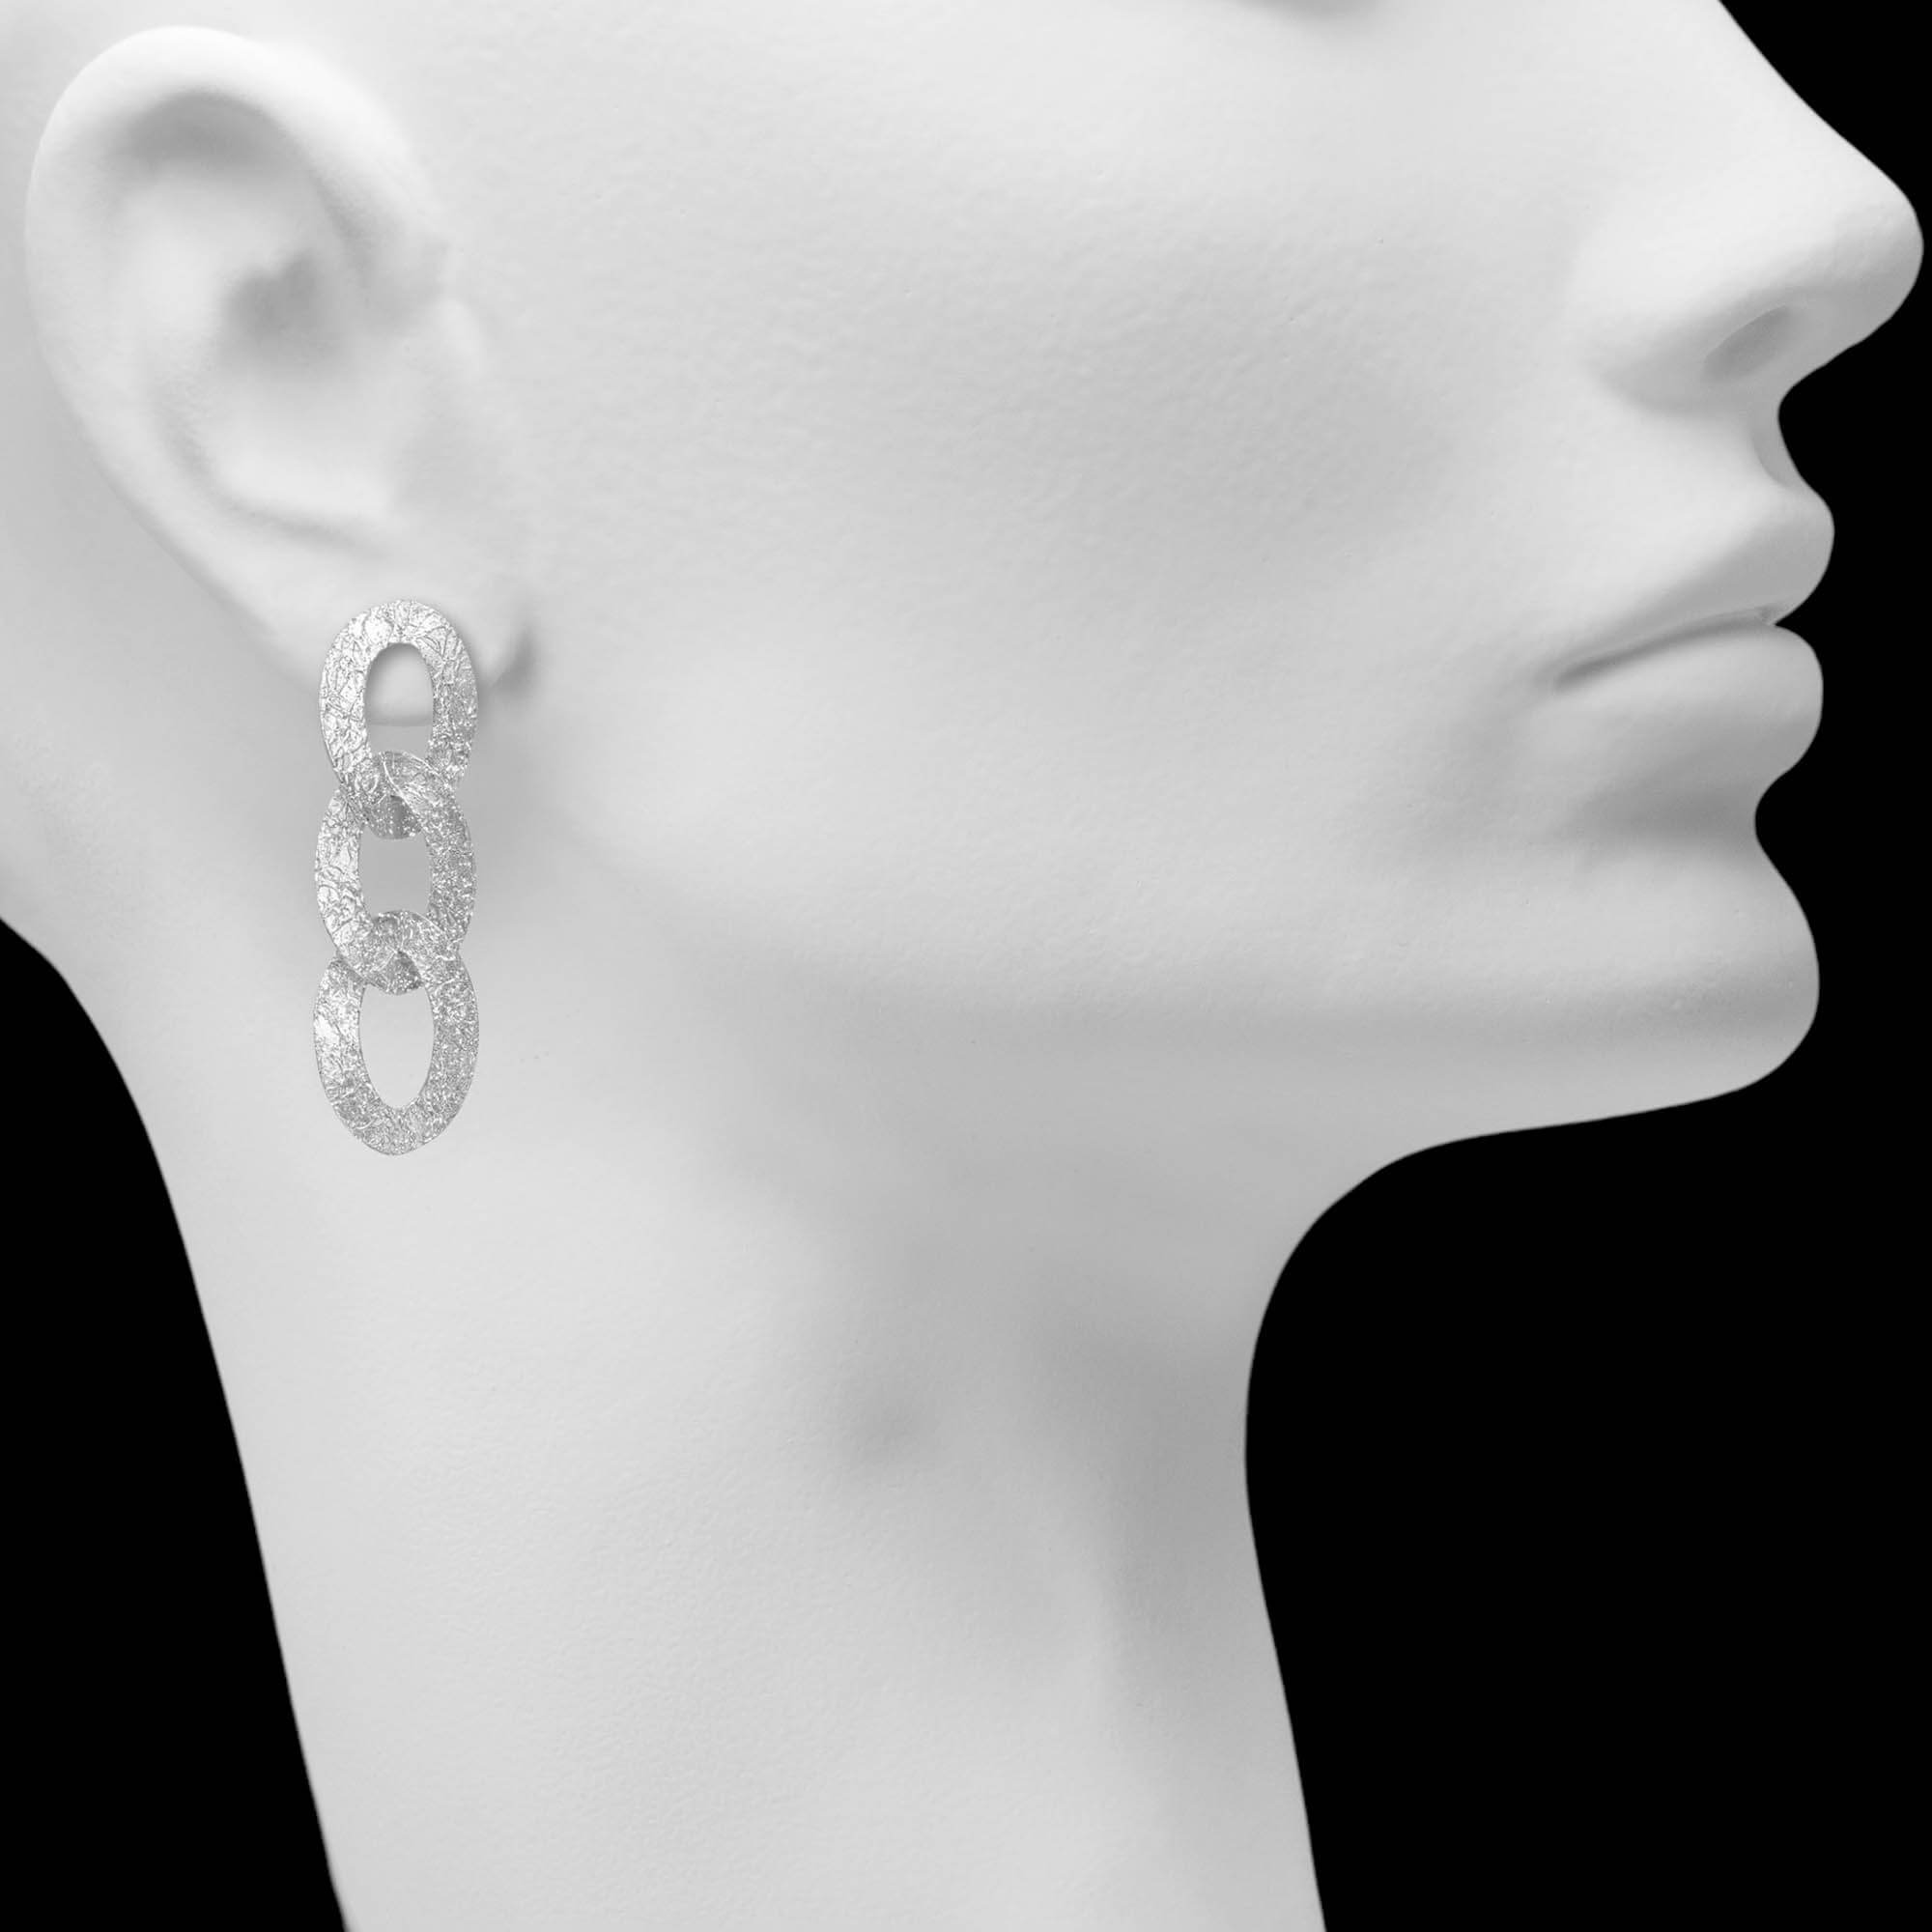 Long switching earrings in silver